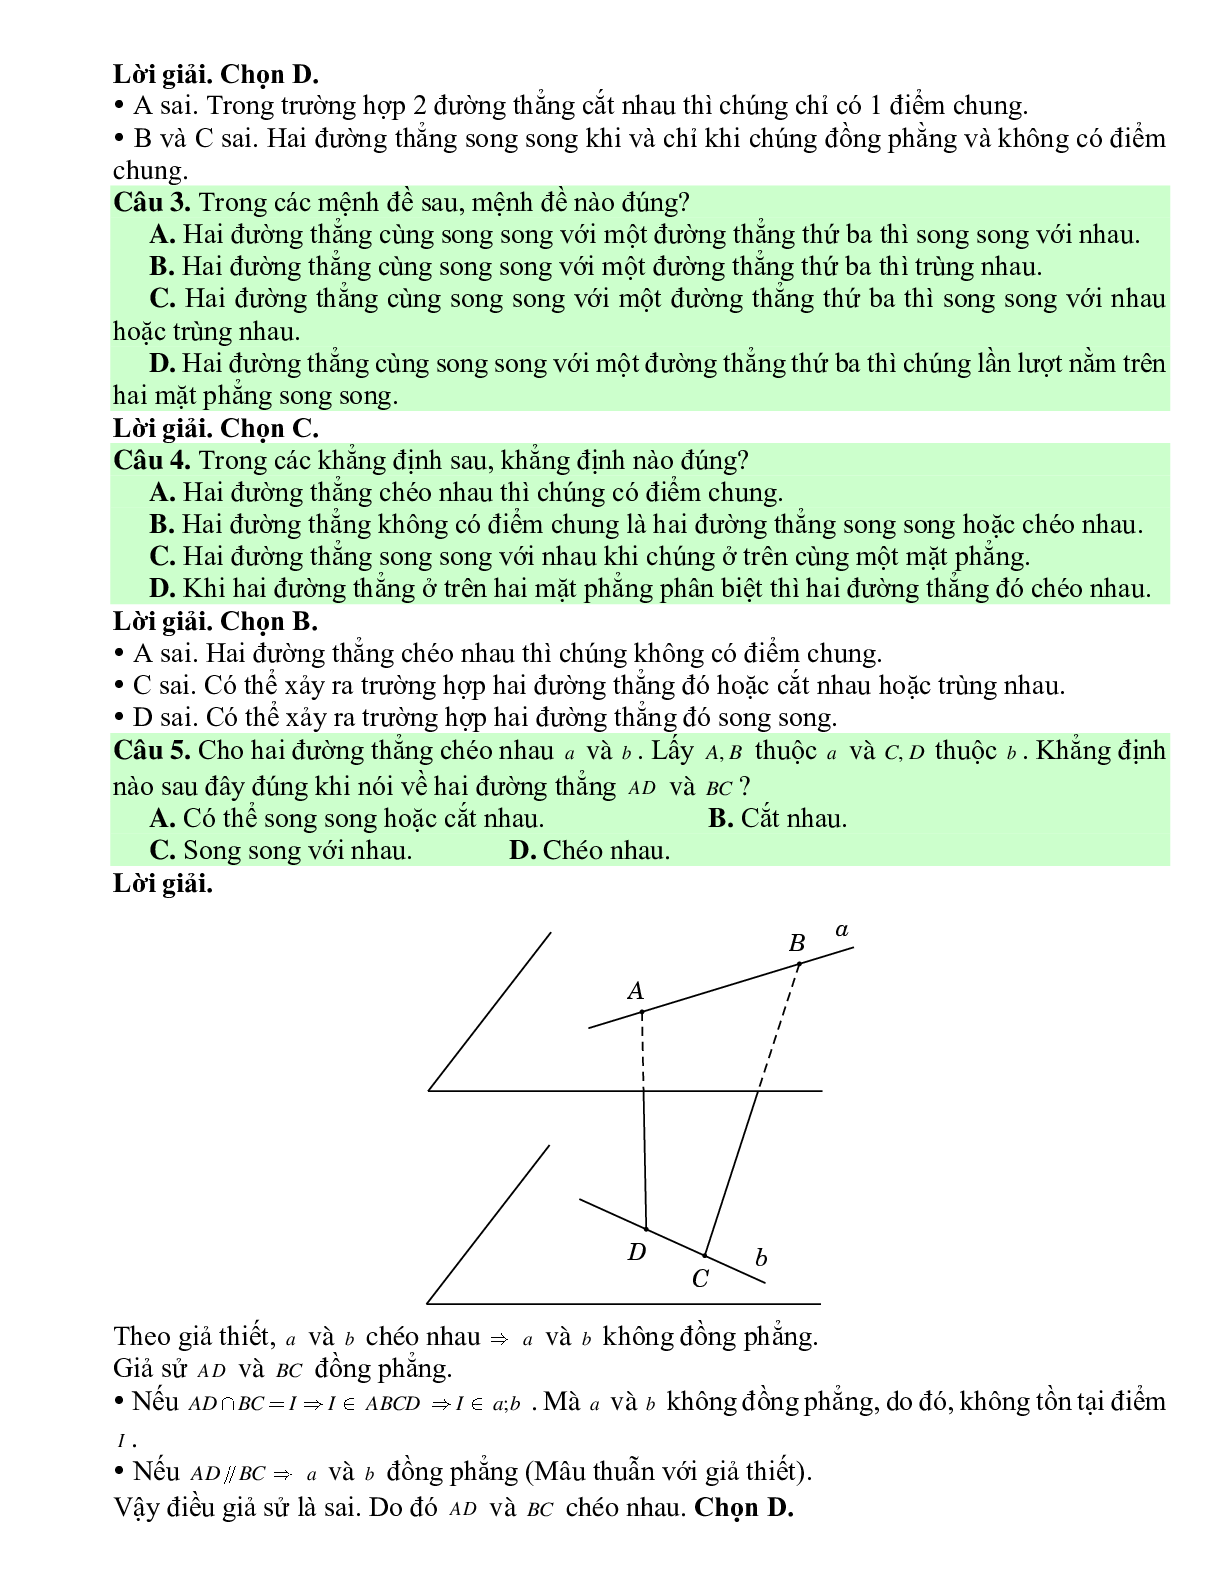 Bài tập Toán hình 11 Bài 2 có đáp án: Hai đường thẳng song song và hai đường thẳng chéo nhau (trang 5)